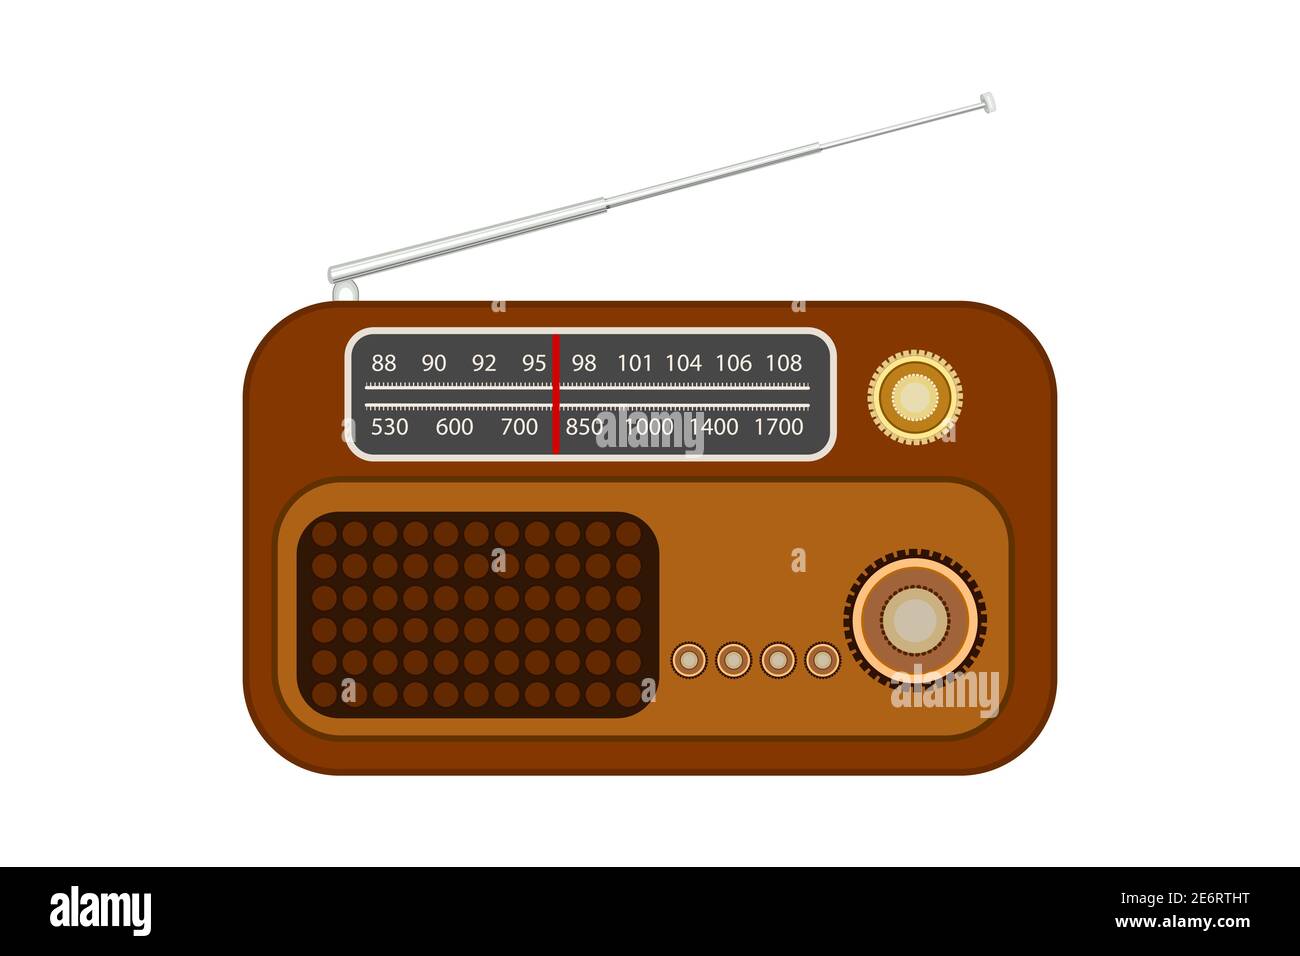 Vecchia radio Immagini Vettoriali Stock - Alamy